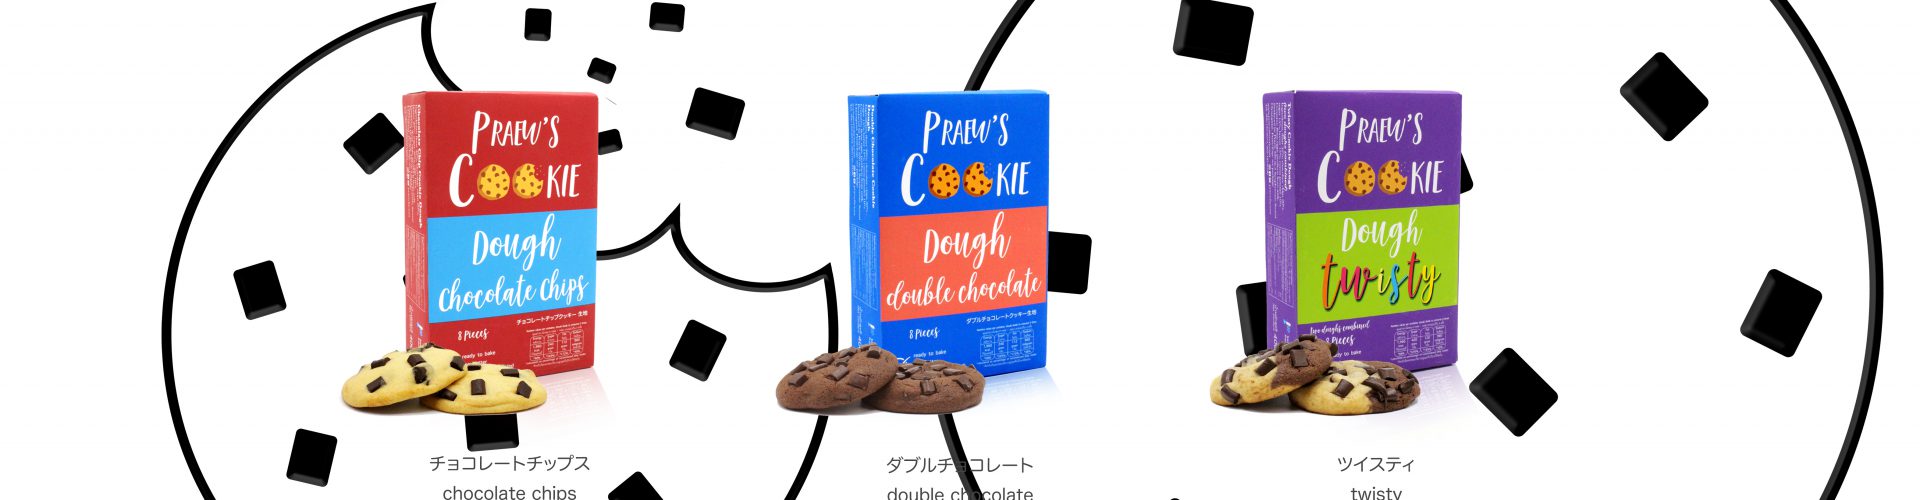 Praew’s Cookie Dough